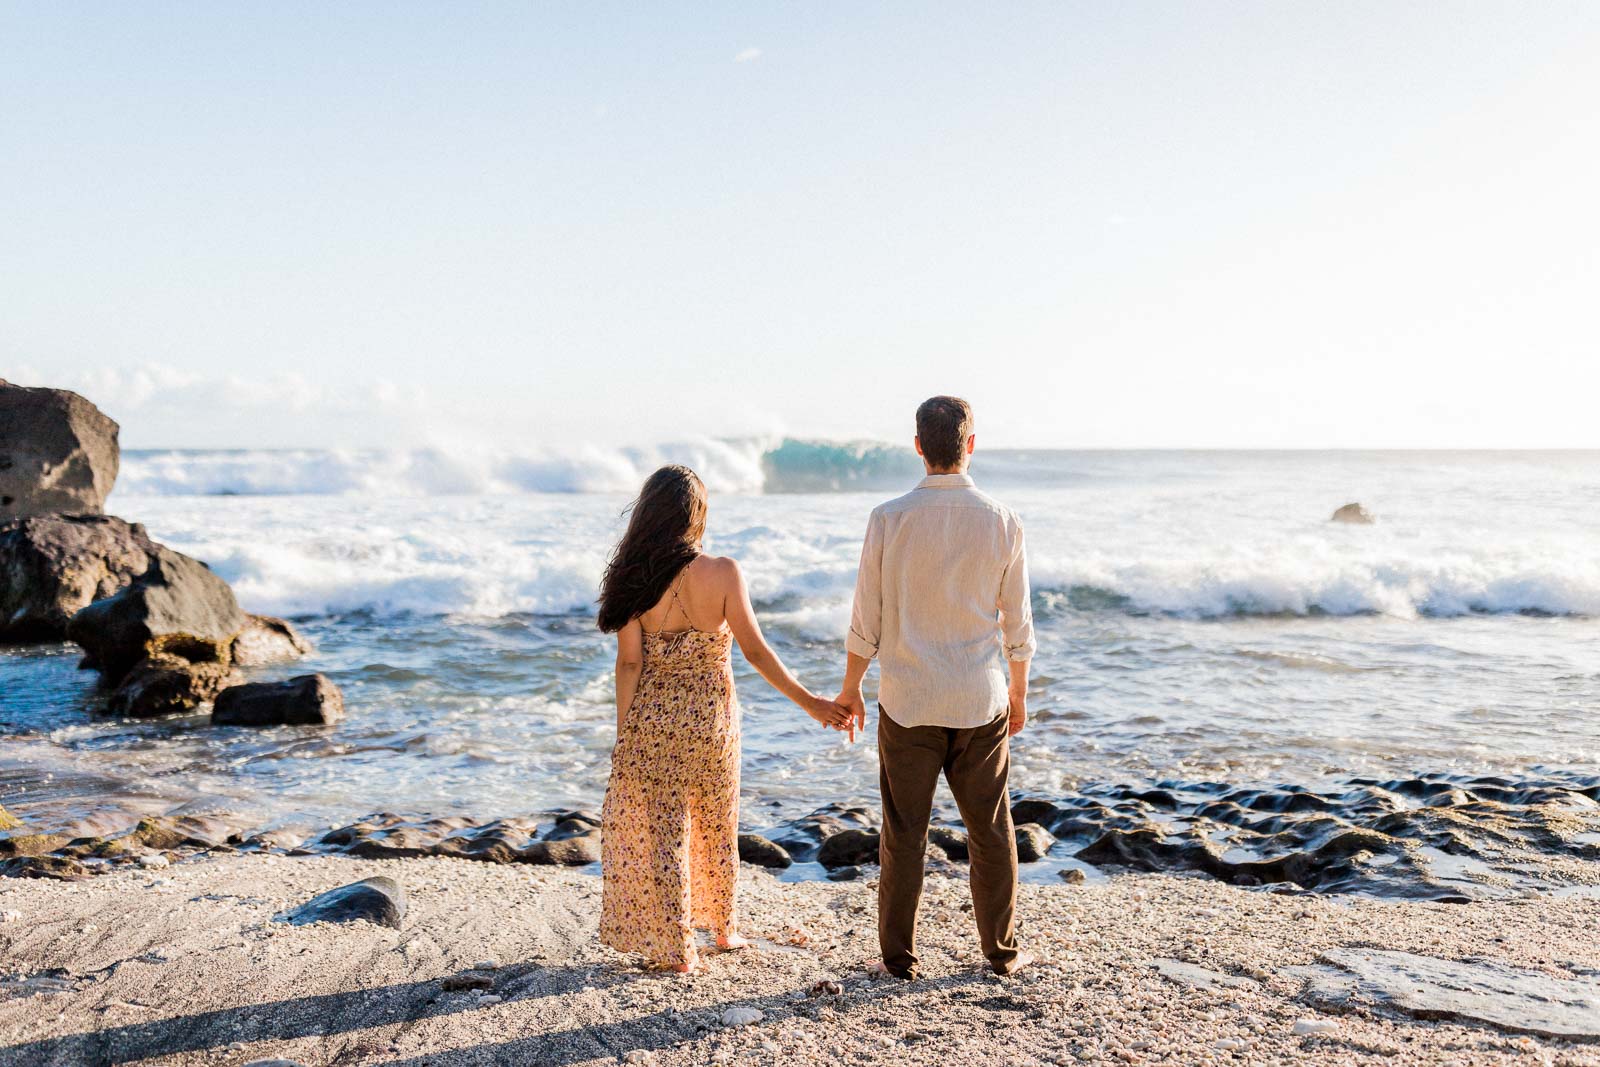 Photographie de Mathieu Dété, photographe de mariage et de couple à Saint-Joseph sur l'île de la Réunion 974, présentant un couple main dans la main et face à la mer